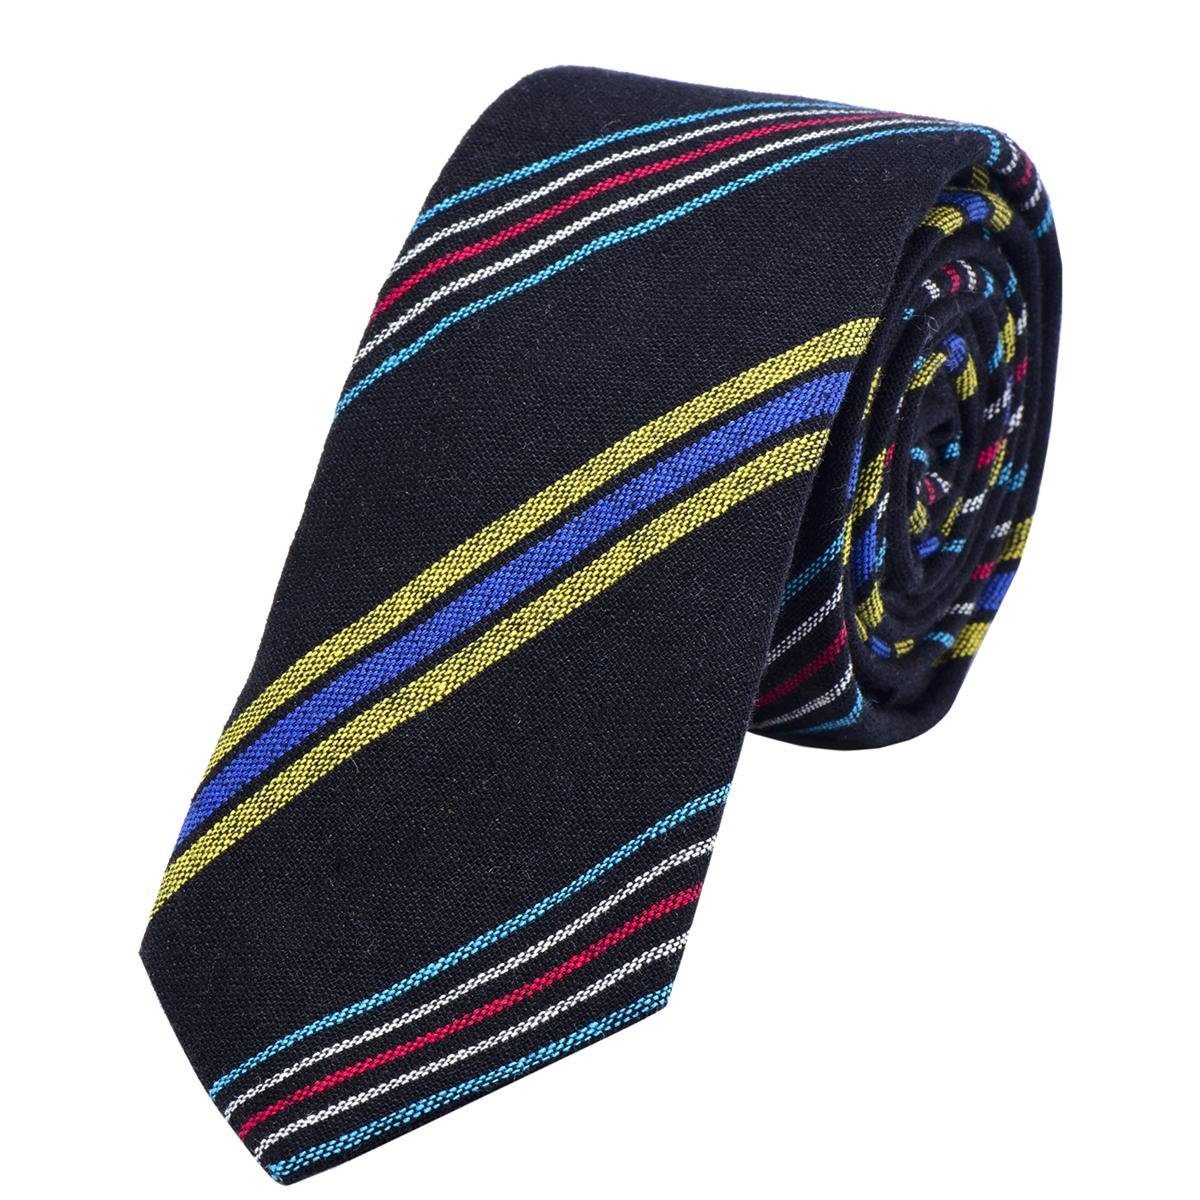 DonDon Krawatte Herren Krawatte 6 cm mit Karos oder Streifen (Packung, 1-St., 1x Krawatte) Baumwolle, kariert oder gestreift, für Büro oder festliche Veranstaltungen schwarz gestreift 1